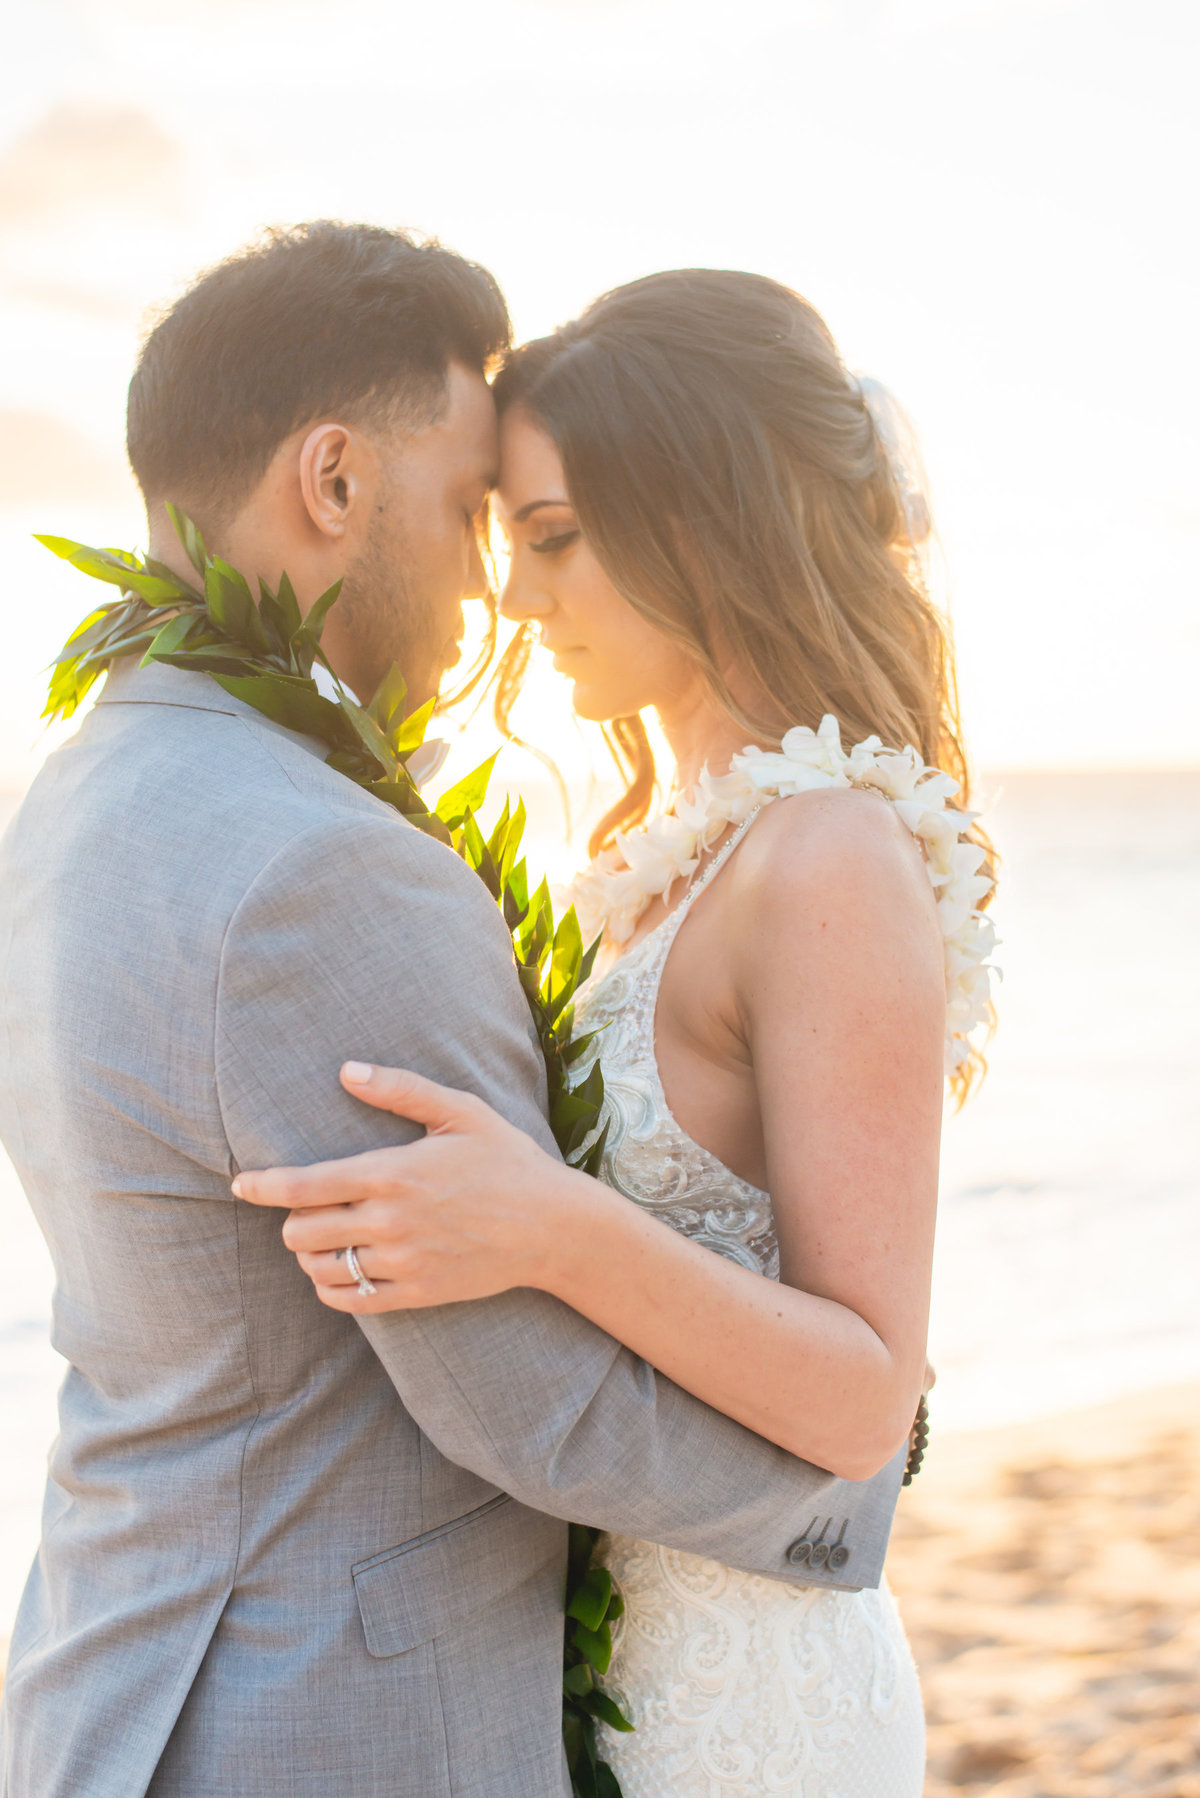 Maui wedding photography - hug